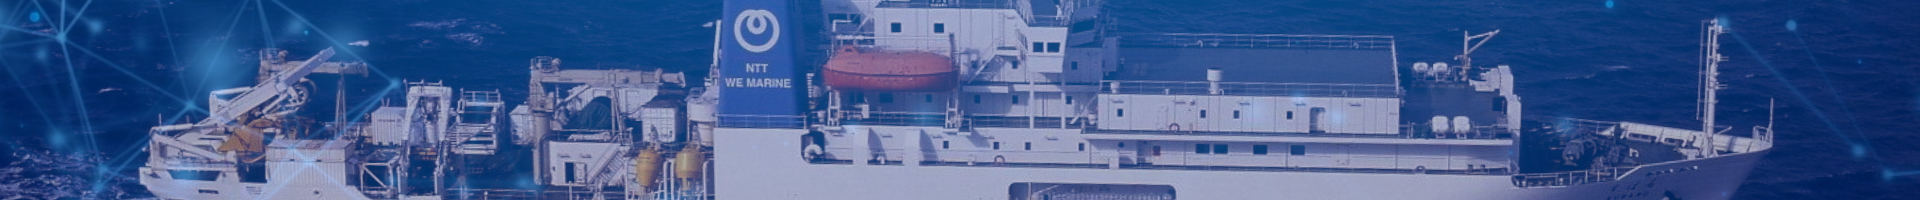 ケーブル敷設船SUBARU